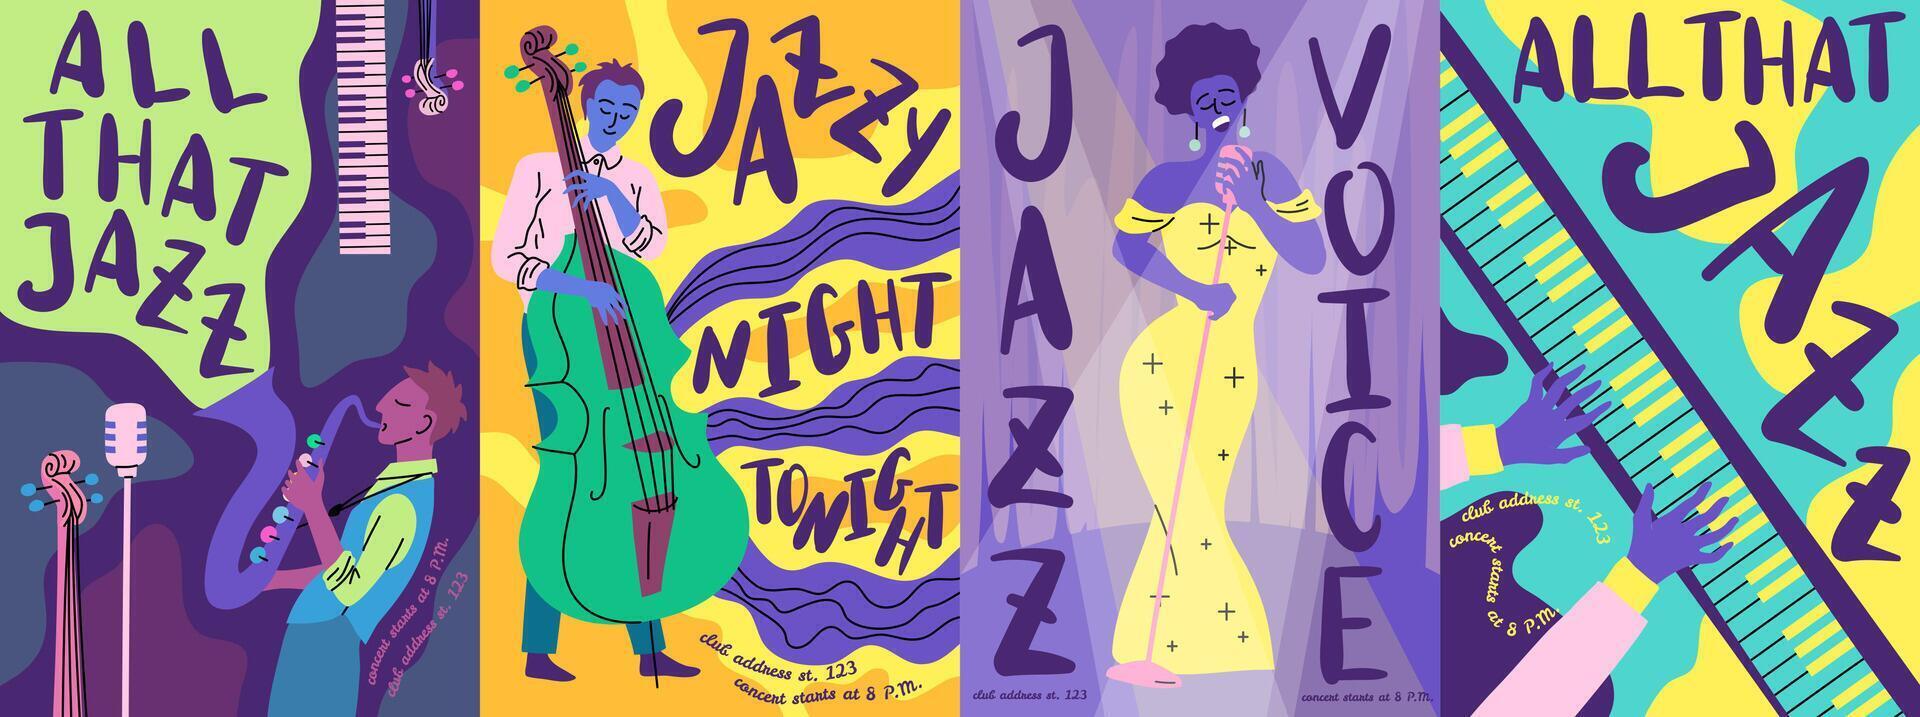 tecknad serie Färg jazz musik festival affisch kort uppsättning. vektor